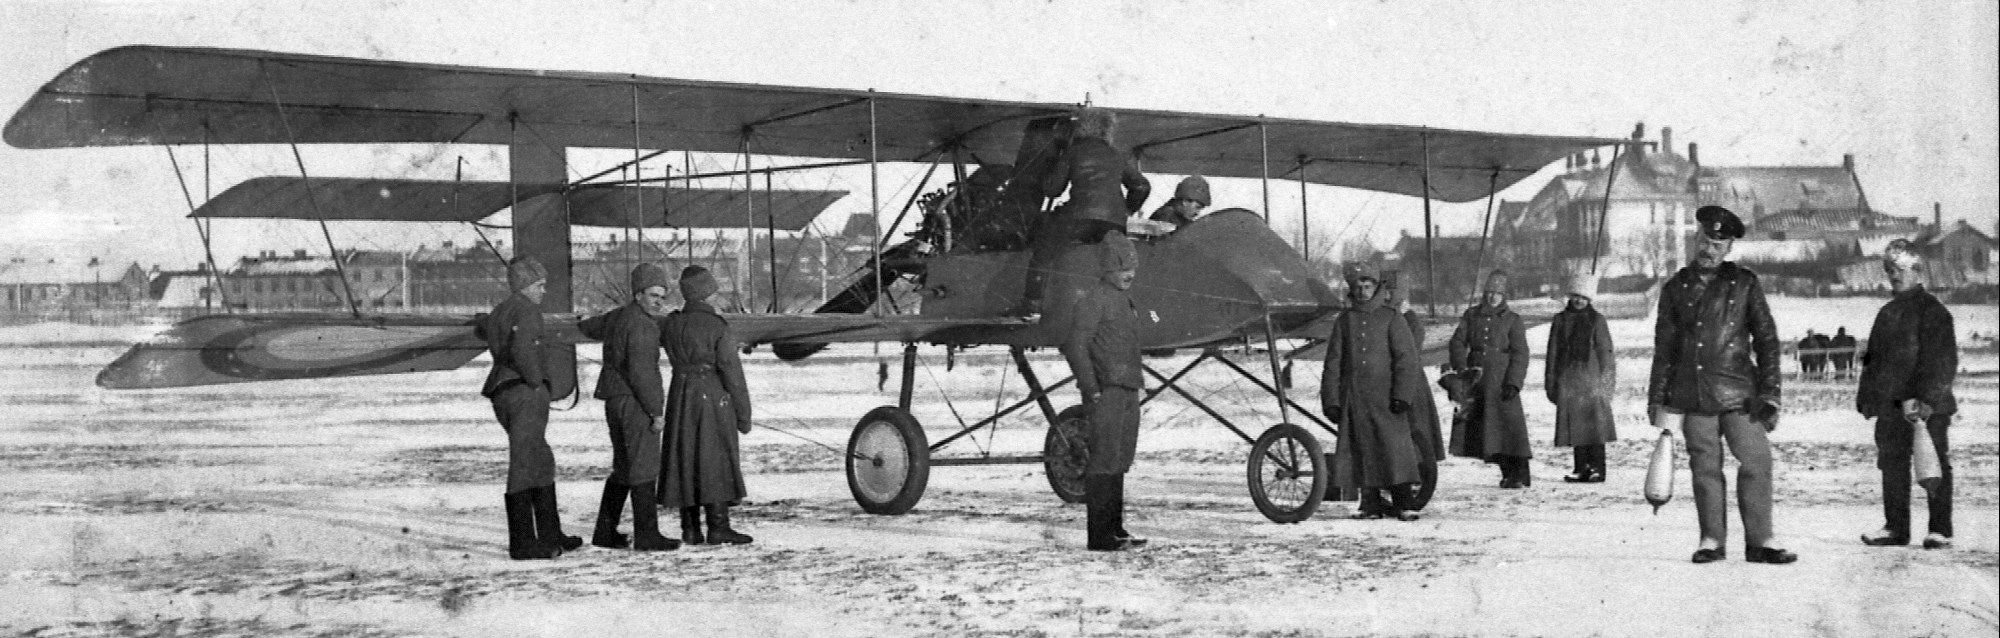 Биплан Вуазен № 477. 12-й армейский авиационный отряд. Первый снимок сделан до плена.